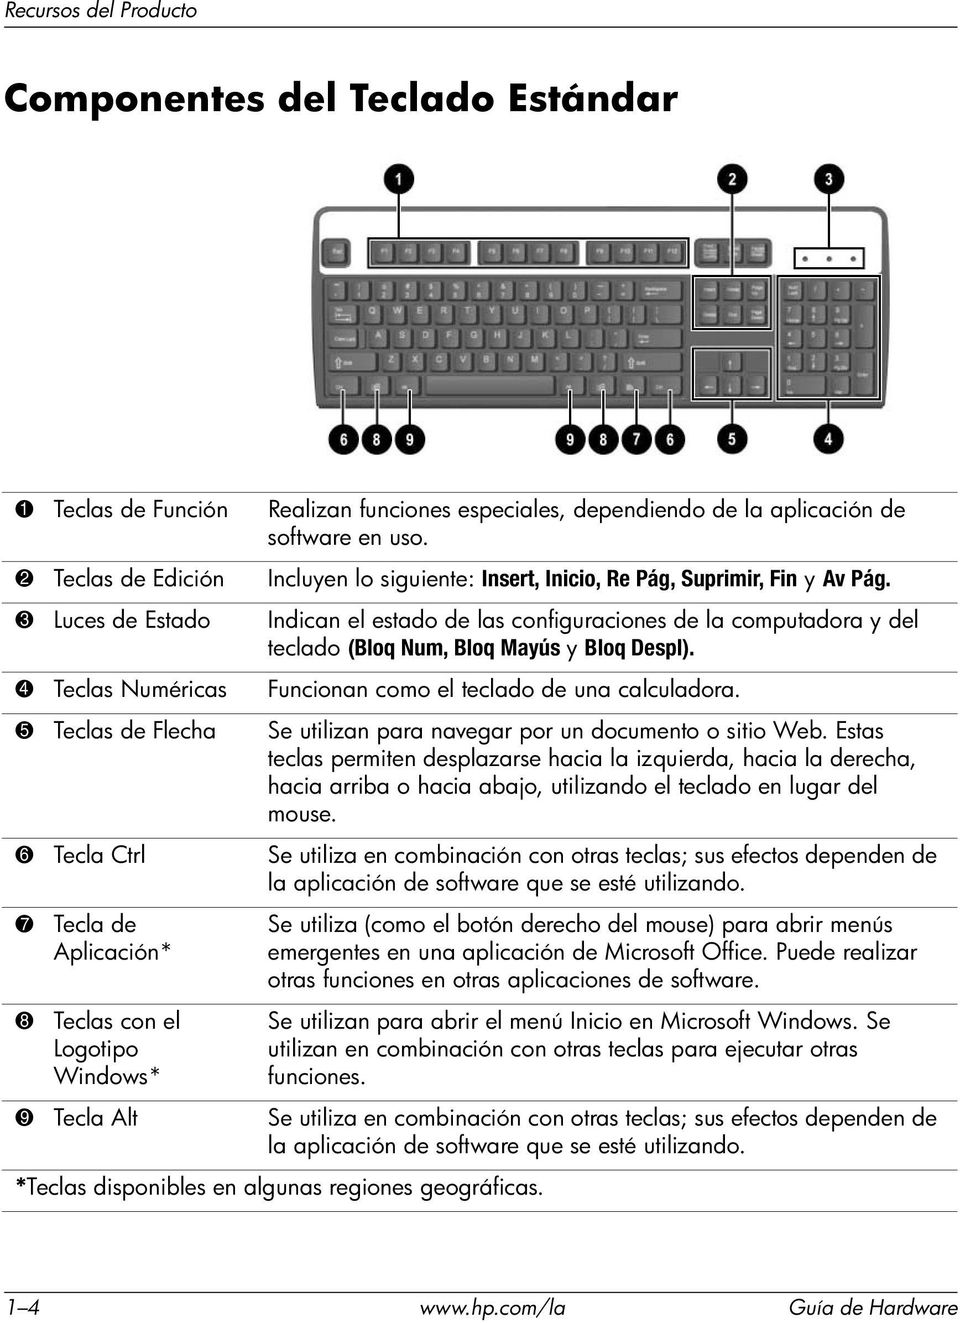 3 Luces de Estado Indican el estado de las configuraciones de la computadora y del teclado (Bloq Num, Bloq Mayús y Bloq Despl). 4 Teclas Numéricas Funcionan como el teclado de una calculadora.